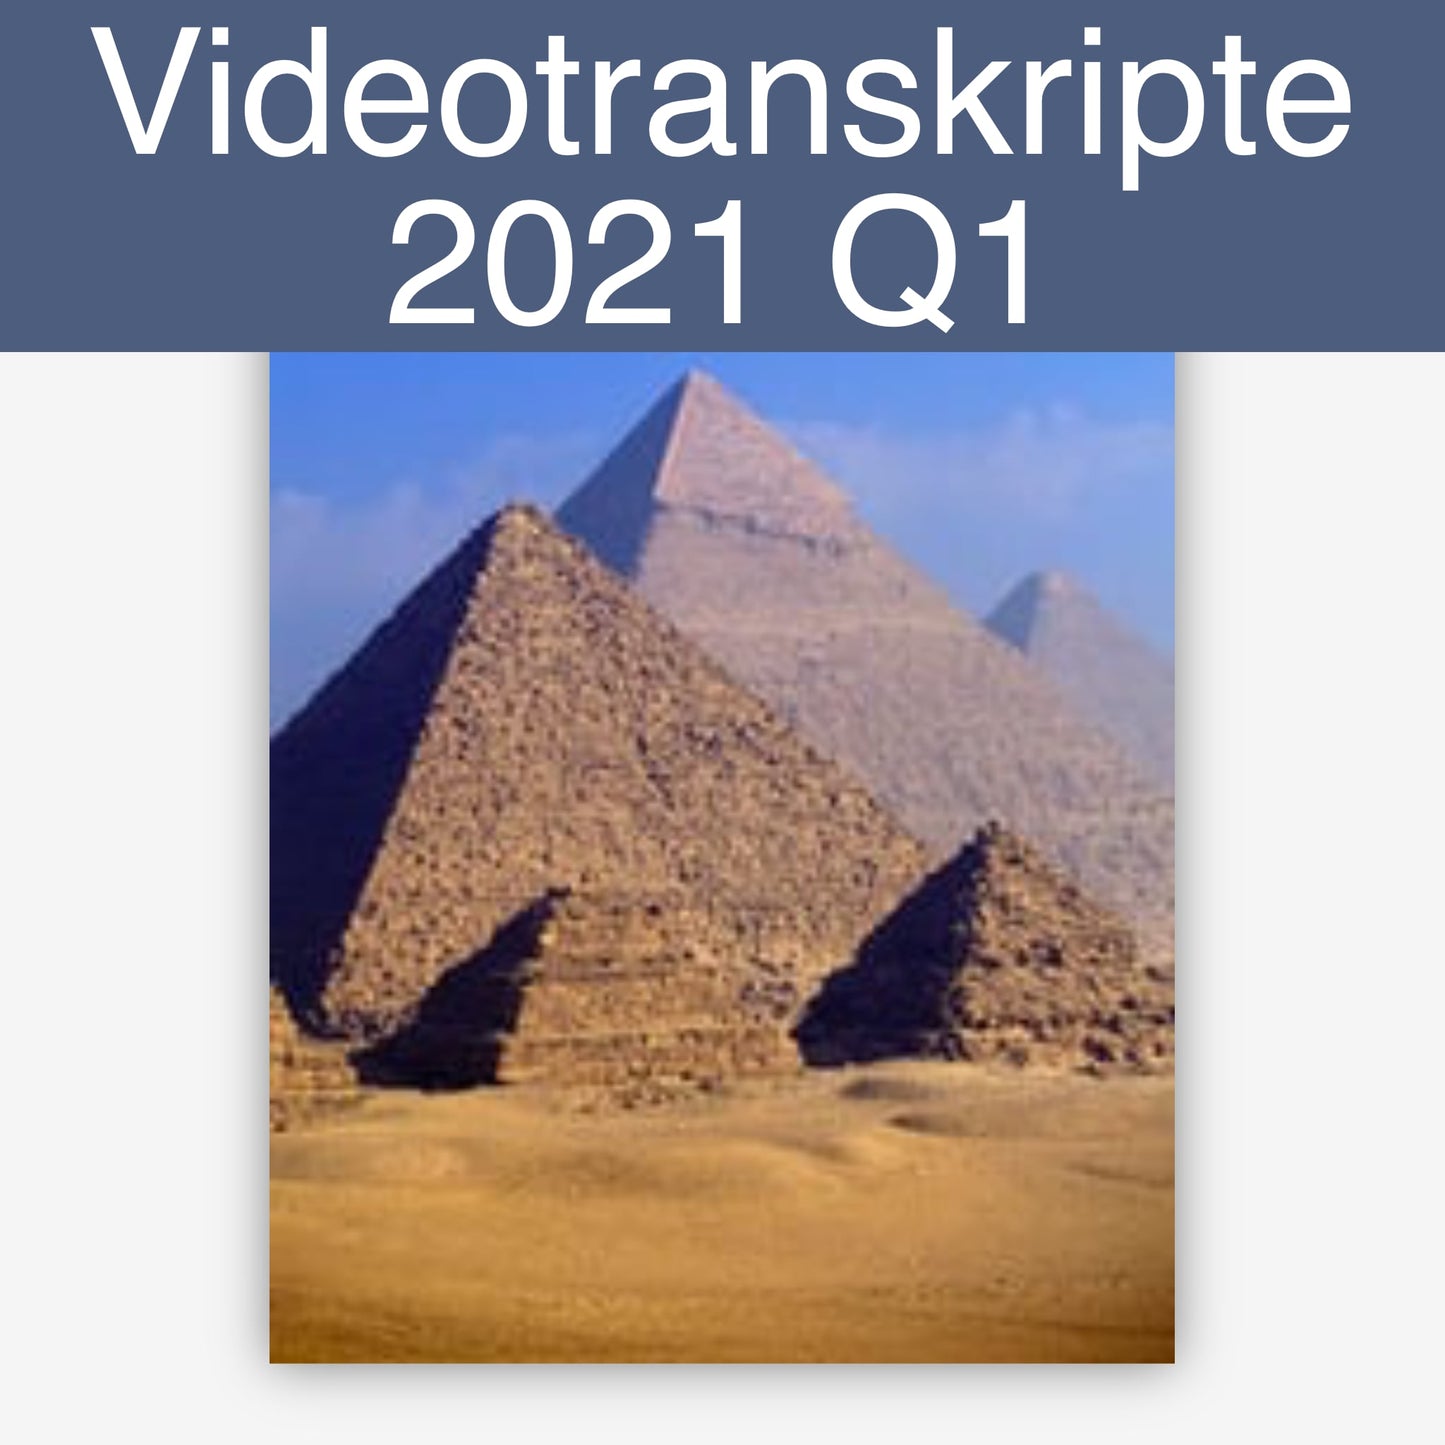 Videotranskripte 2021 Q1